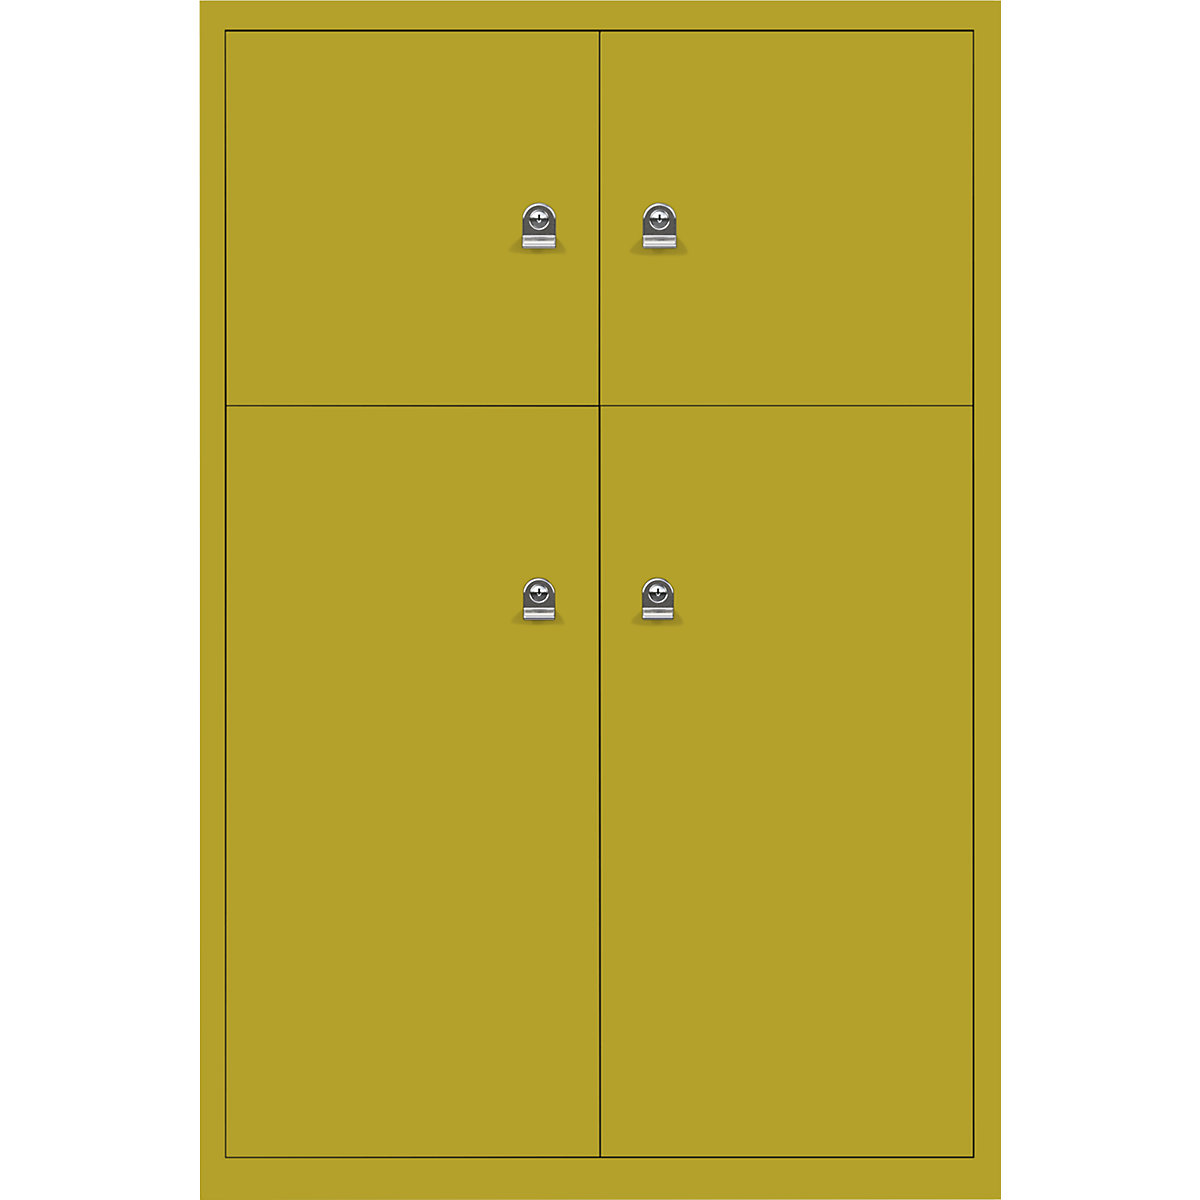 Omara s predelki z zaklepanjem LateralFile™ – BISLEY, 4 predelki z zaklepanjem, višina 2 x 375 mm, 2 x 755 mm, travnato zelene barve-4